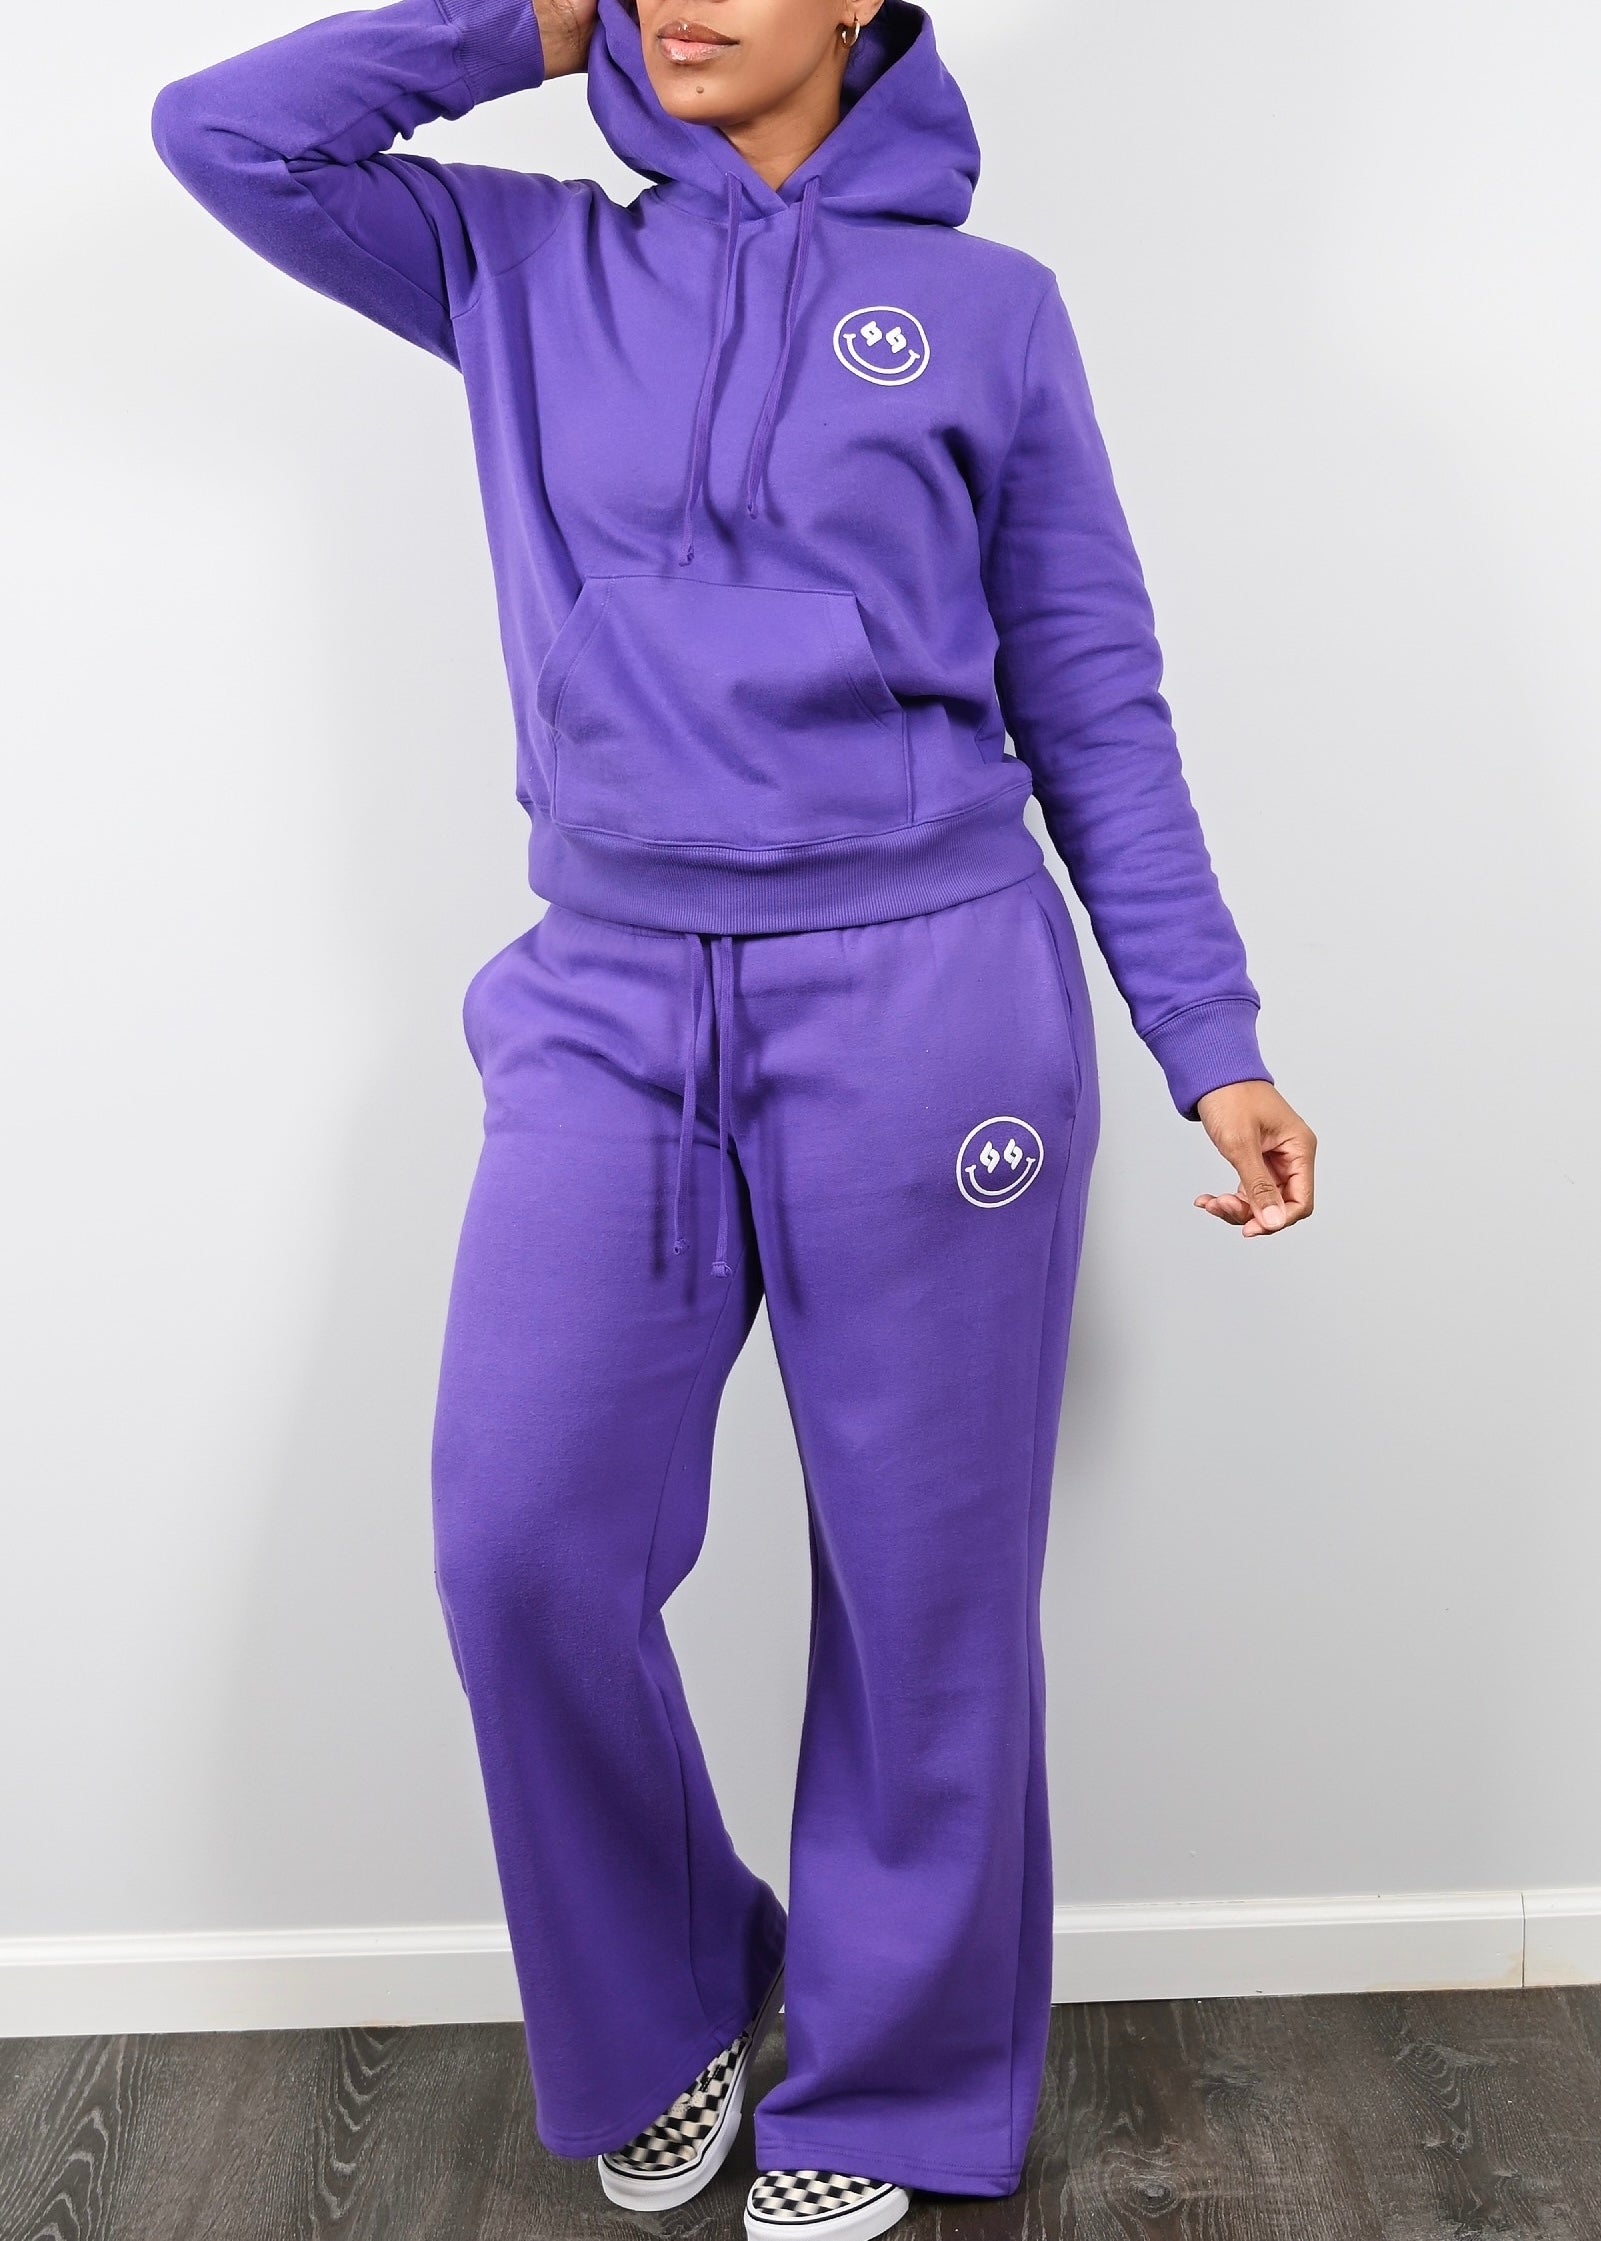 Exclusive Smiley Face Fleece Cargo Sweatsuit | Wisteria Purple